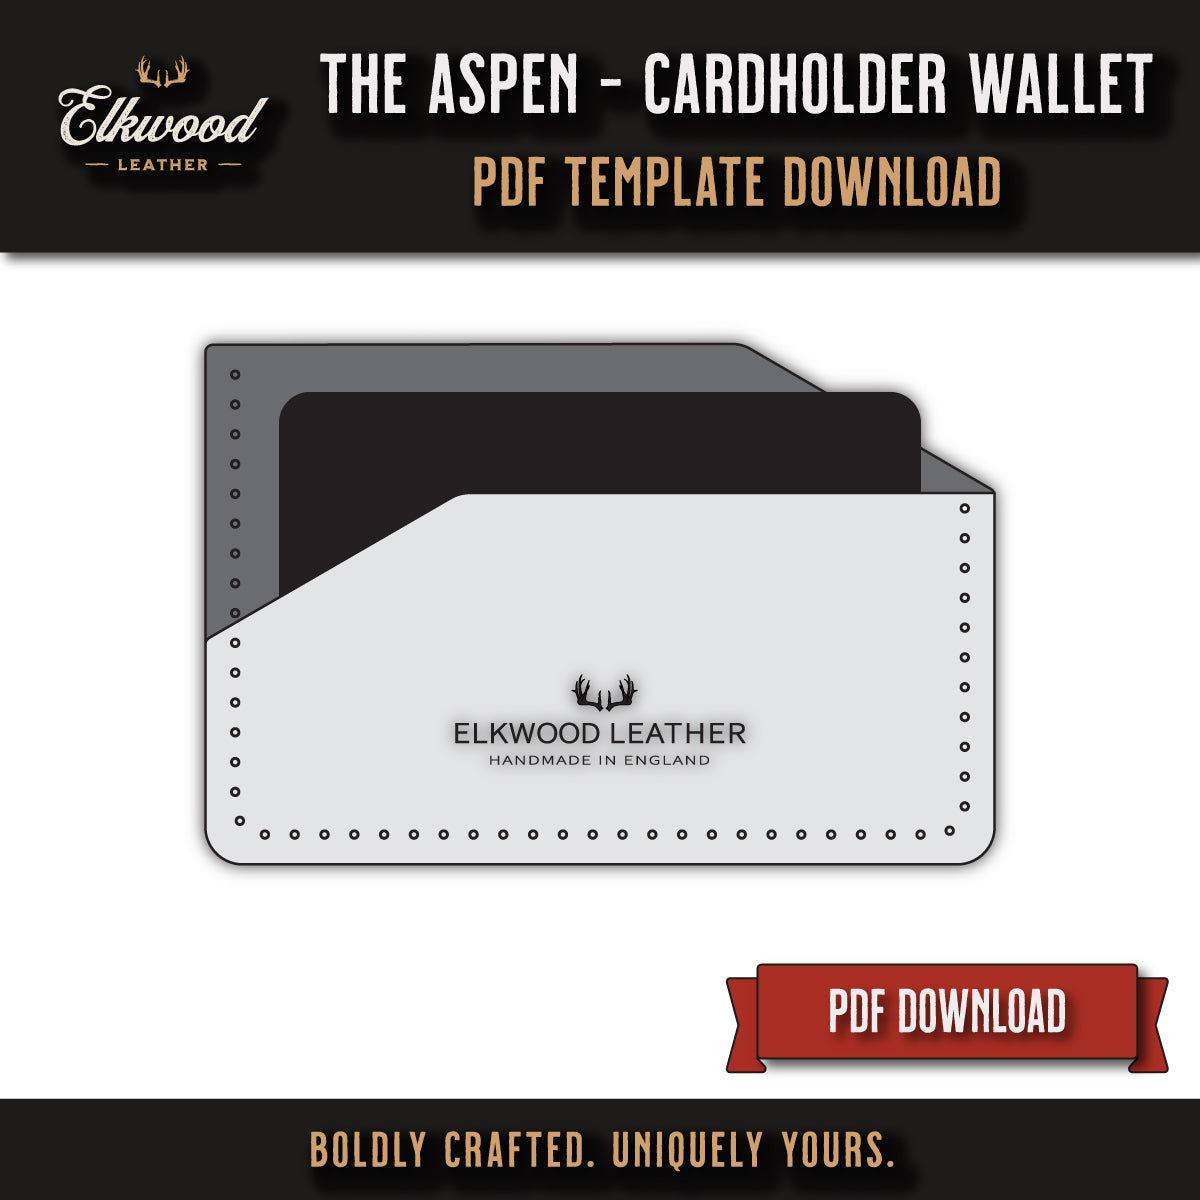 Elkwood Leather - The Aspen Cardholder wallet digital download pdf template